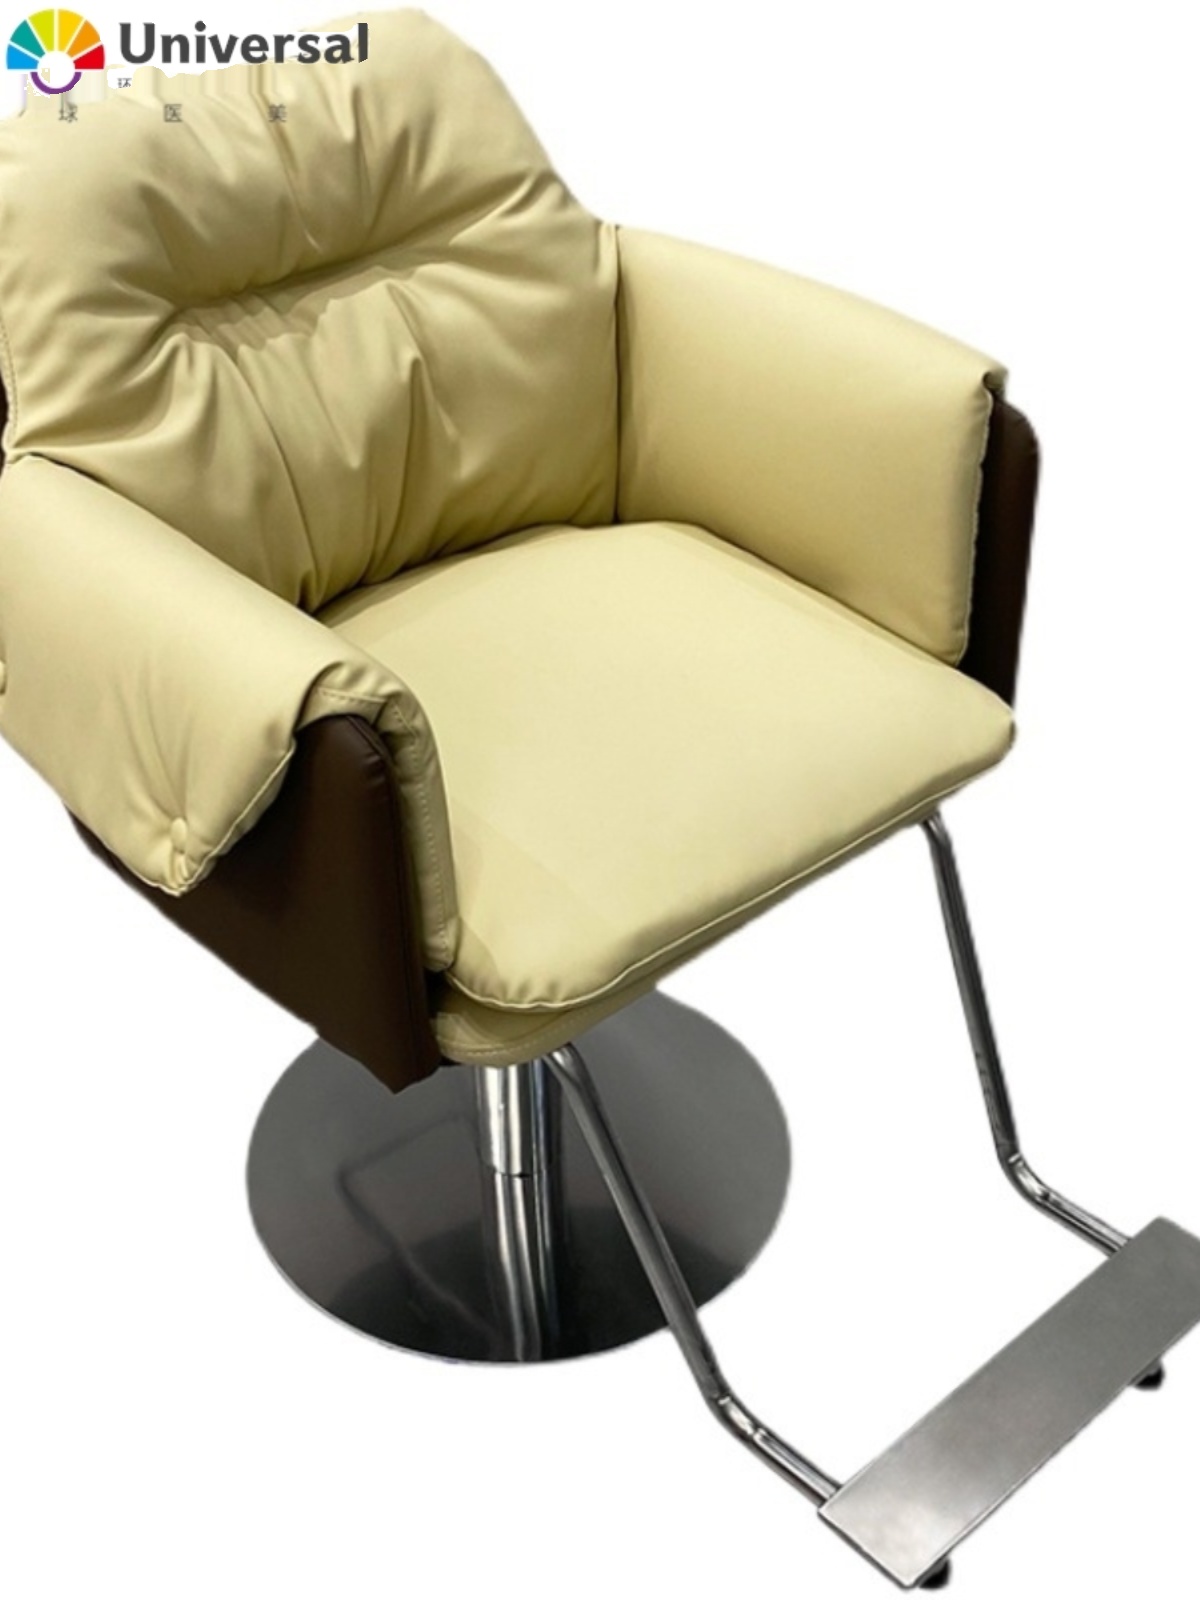 新款网红美发椅子3AM 同款美发店椅子发廊专用理发店椅高端剪发椅